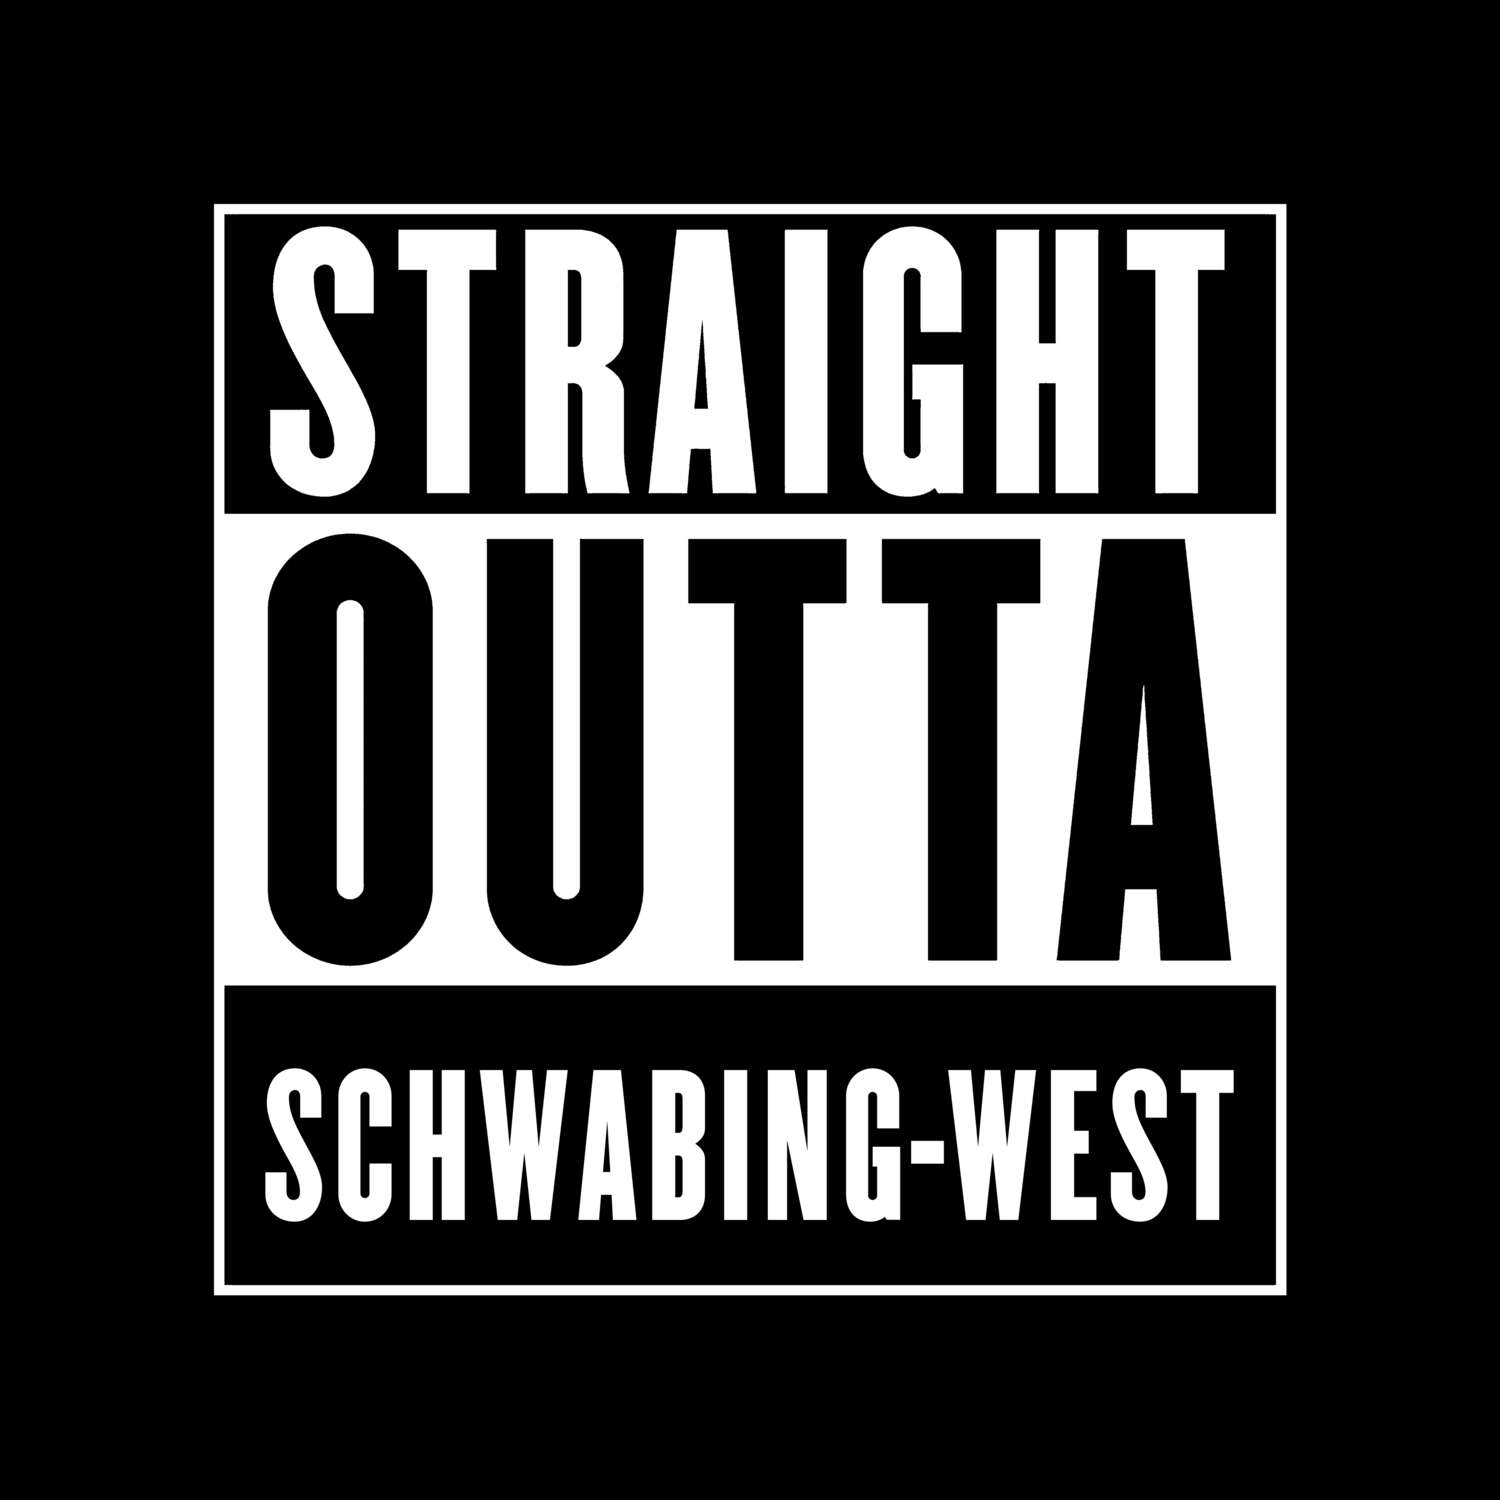 Schwabing-West T-Shirt »Straight Outta«